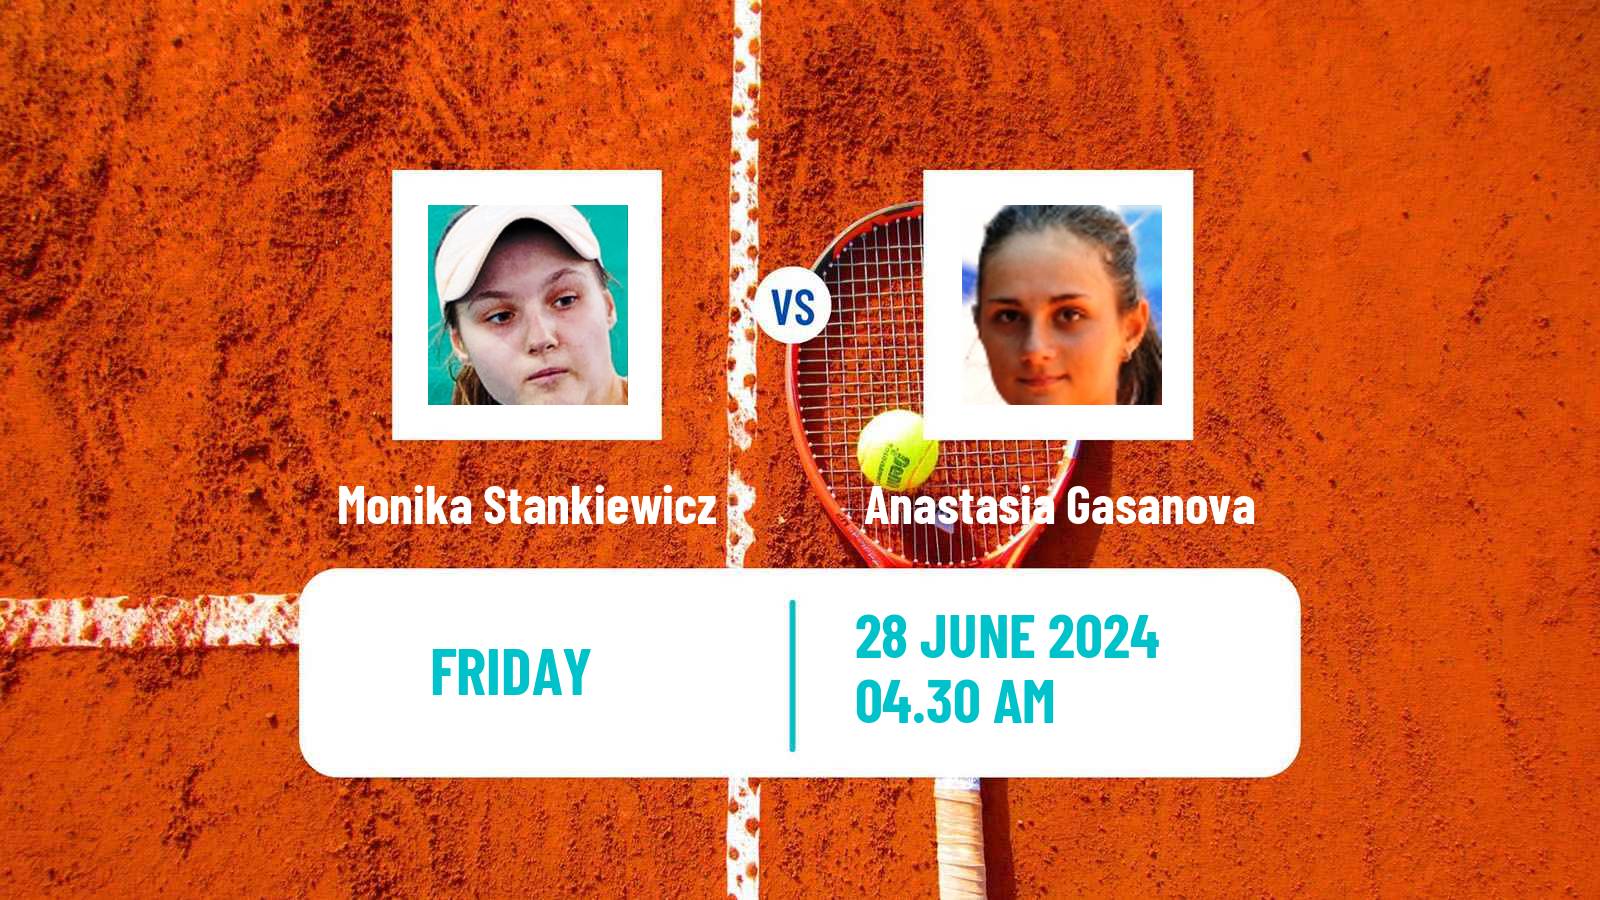 Tennis ITF W15 Monastir 24 Women Monika Stankiewicz - Anastasia Gasanova